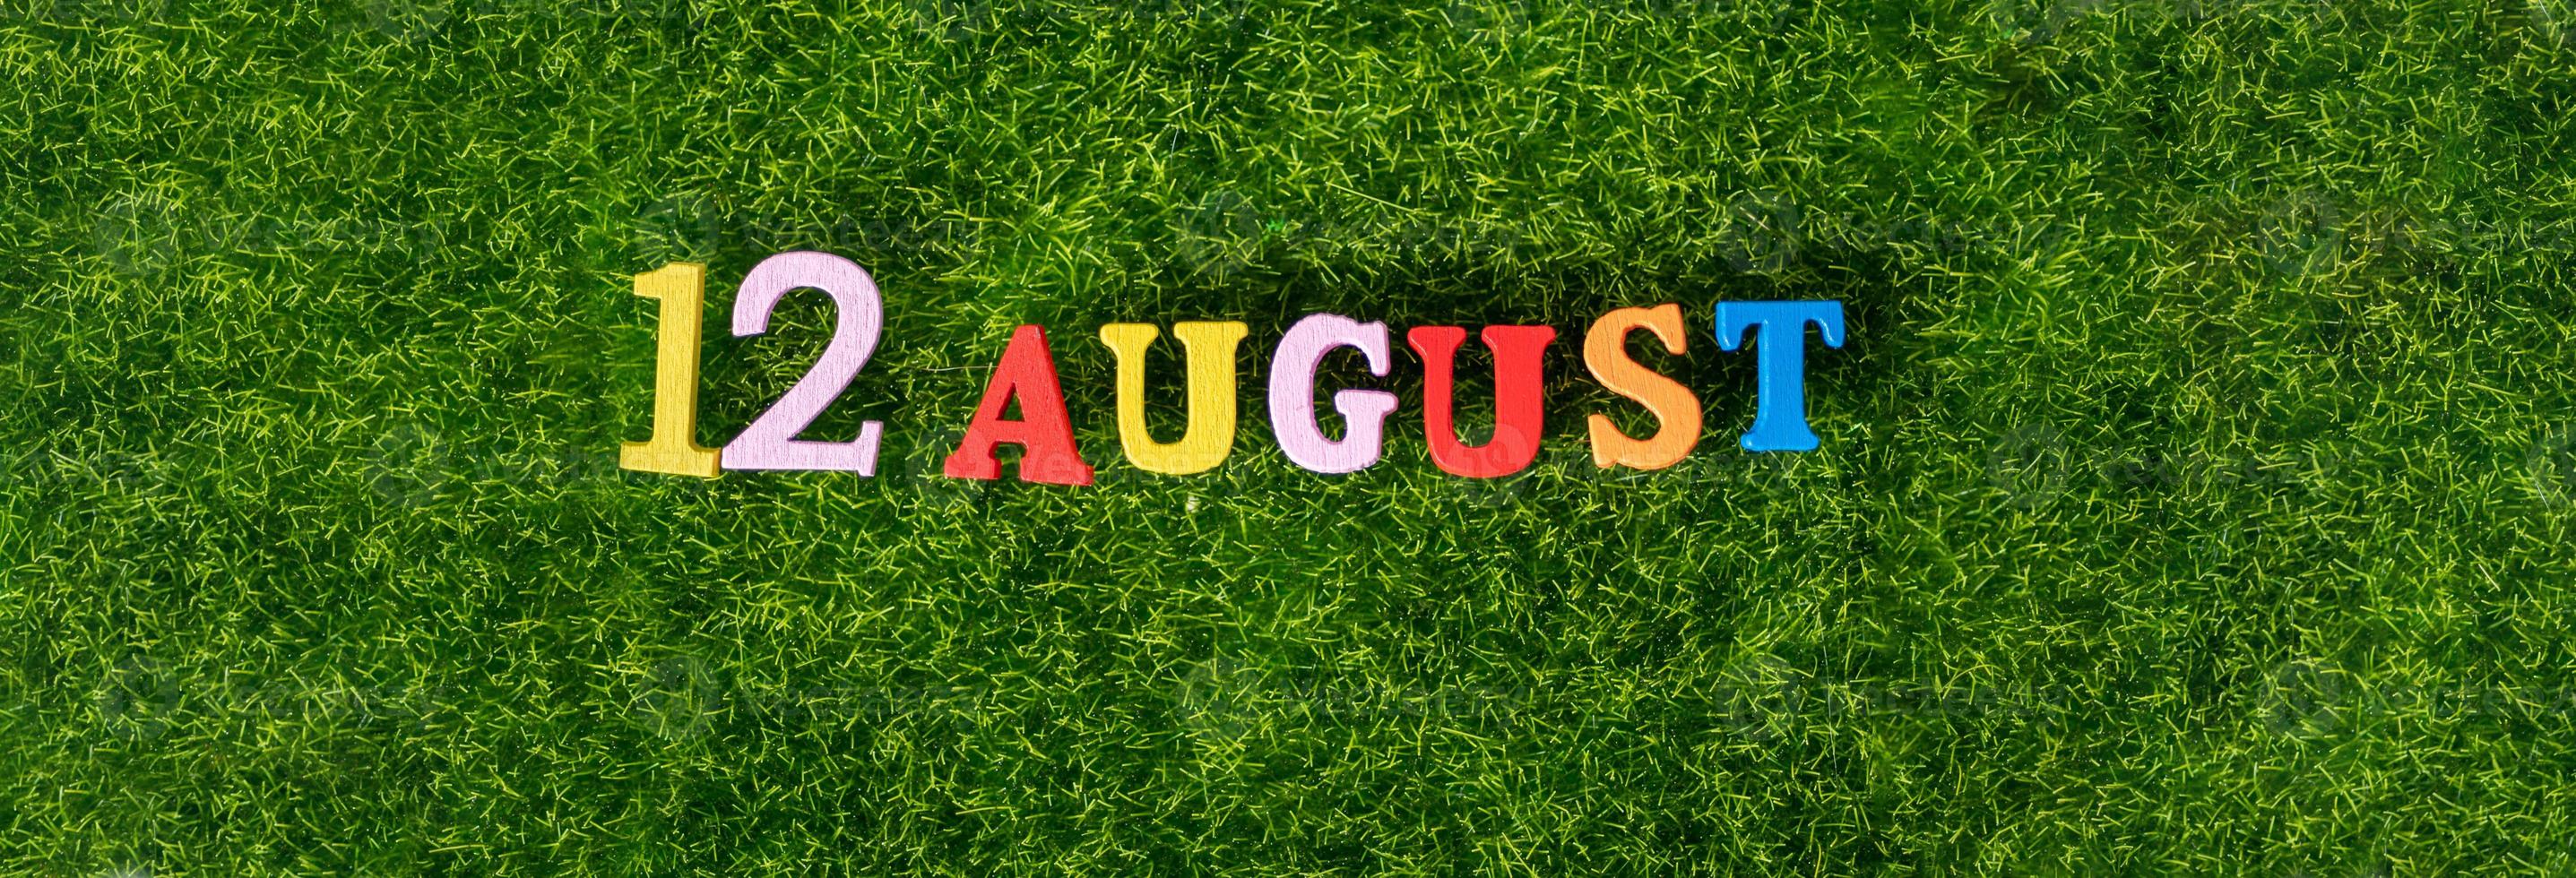 20 augustus afbeelding van houten letters en cijfers op 20 tegen de achtergrond van een groen gazon. 5326287 Vecteezy